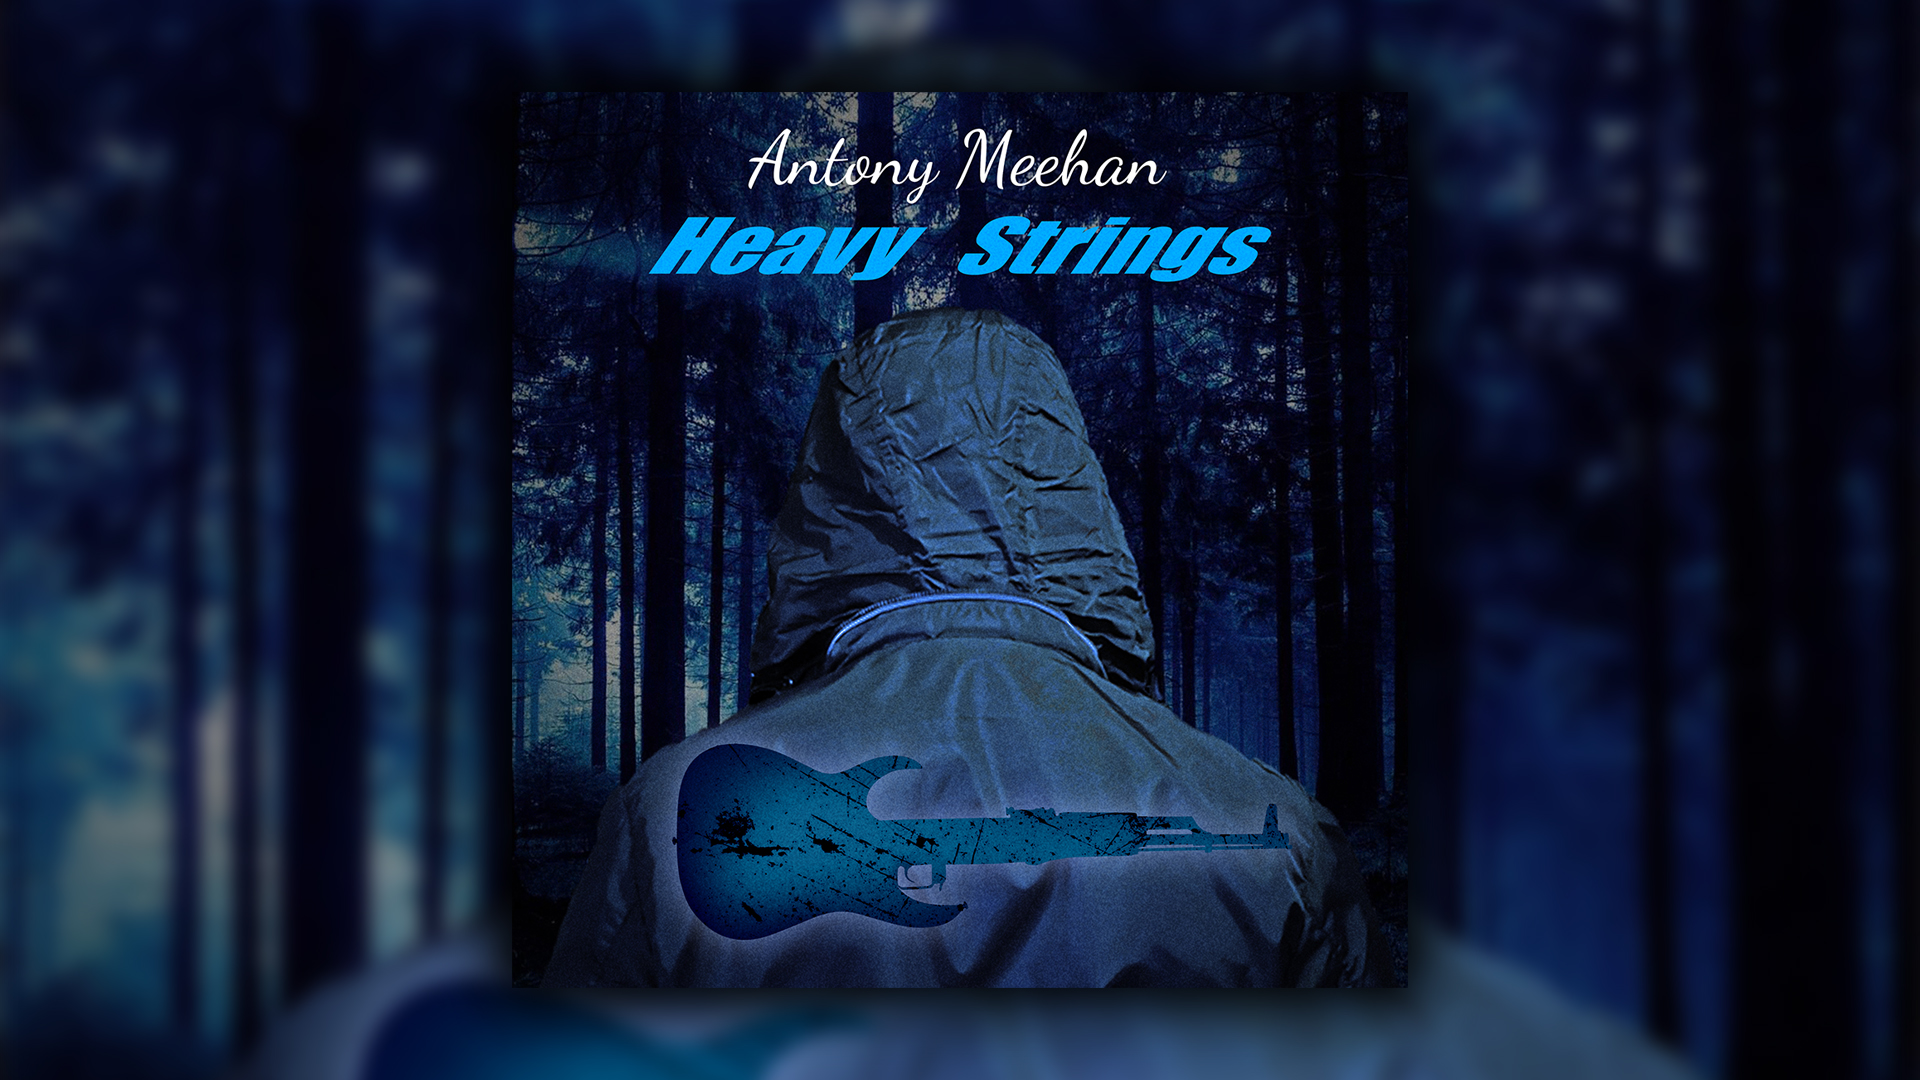 Antony Meehan - Heavy Strings